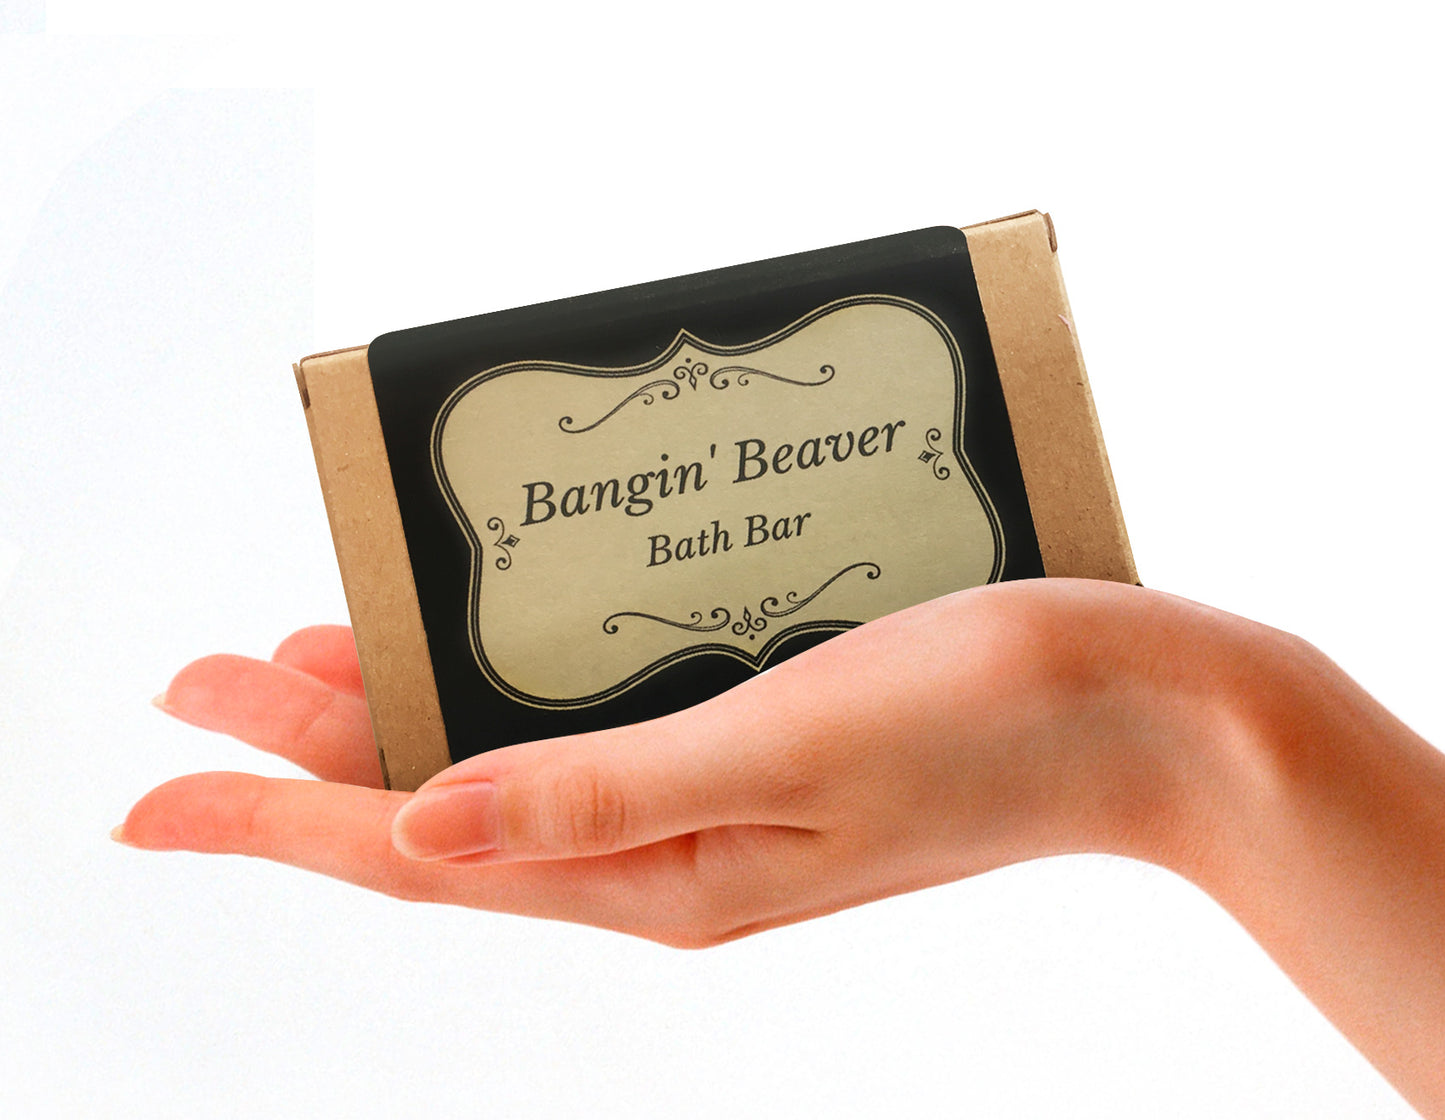 Bangin' Beaver Bath Bar